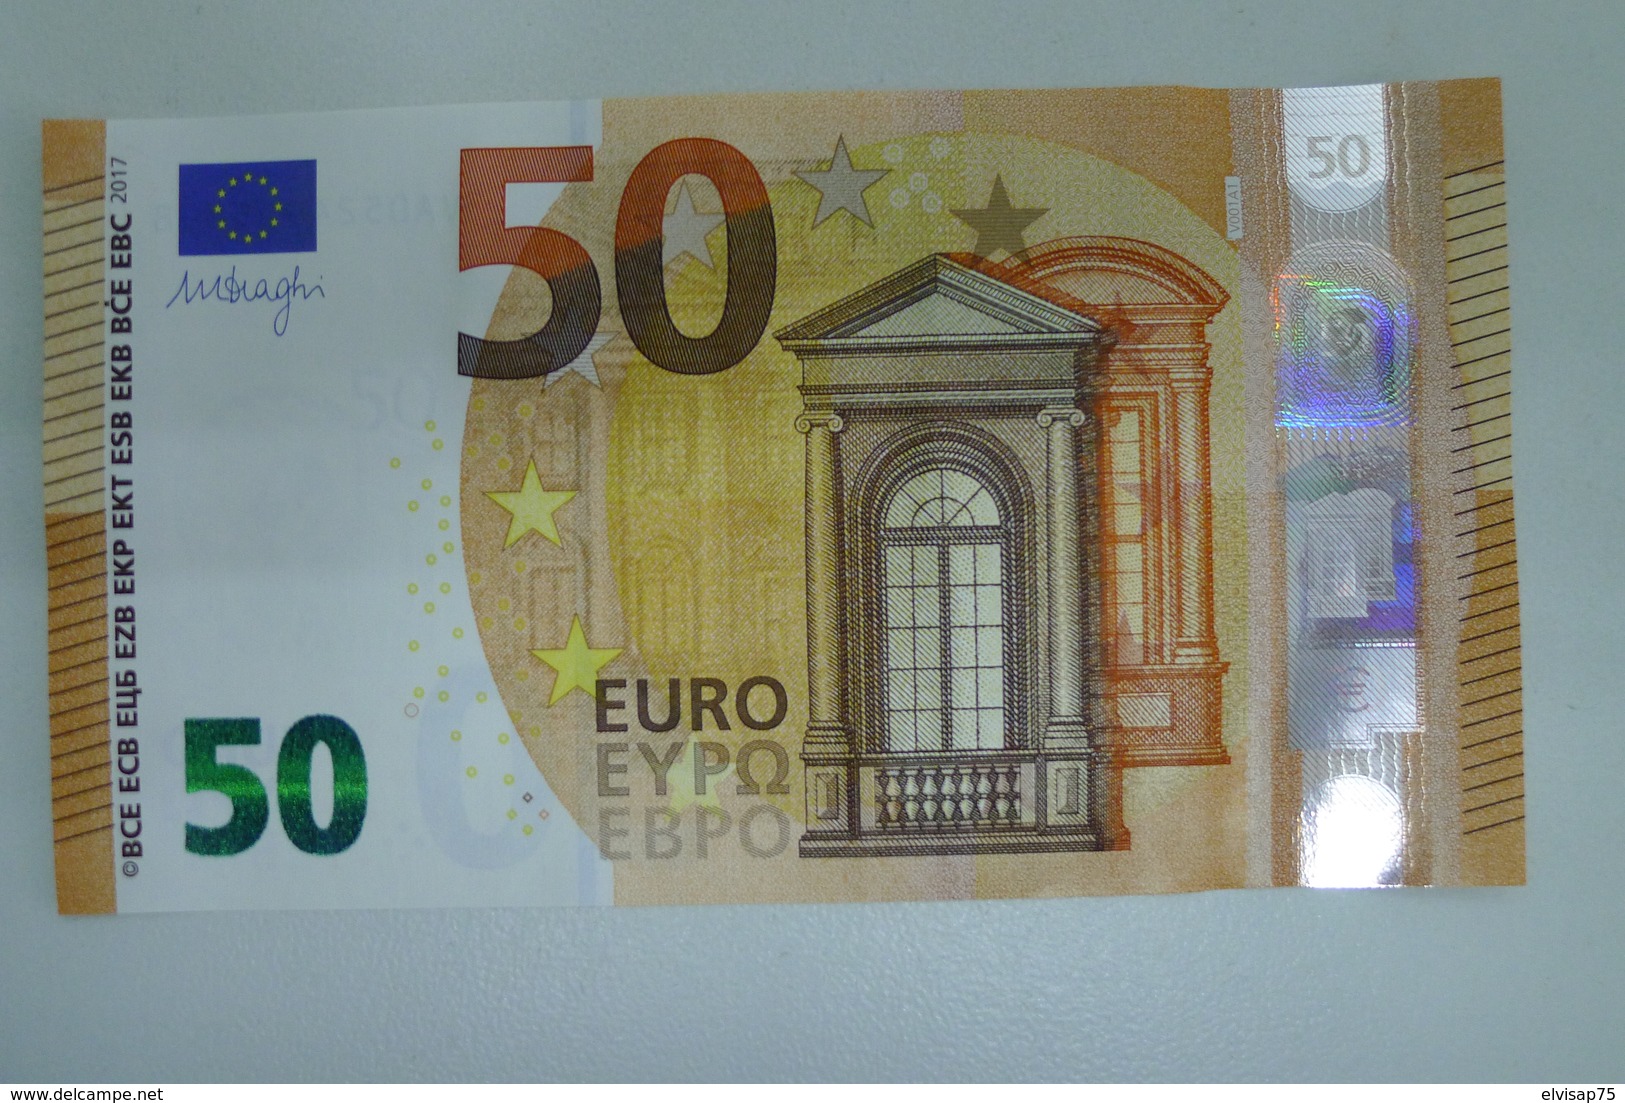 50 EURO SPAIN DRAGHI V001A1 UNC - 50 Euro